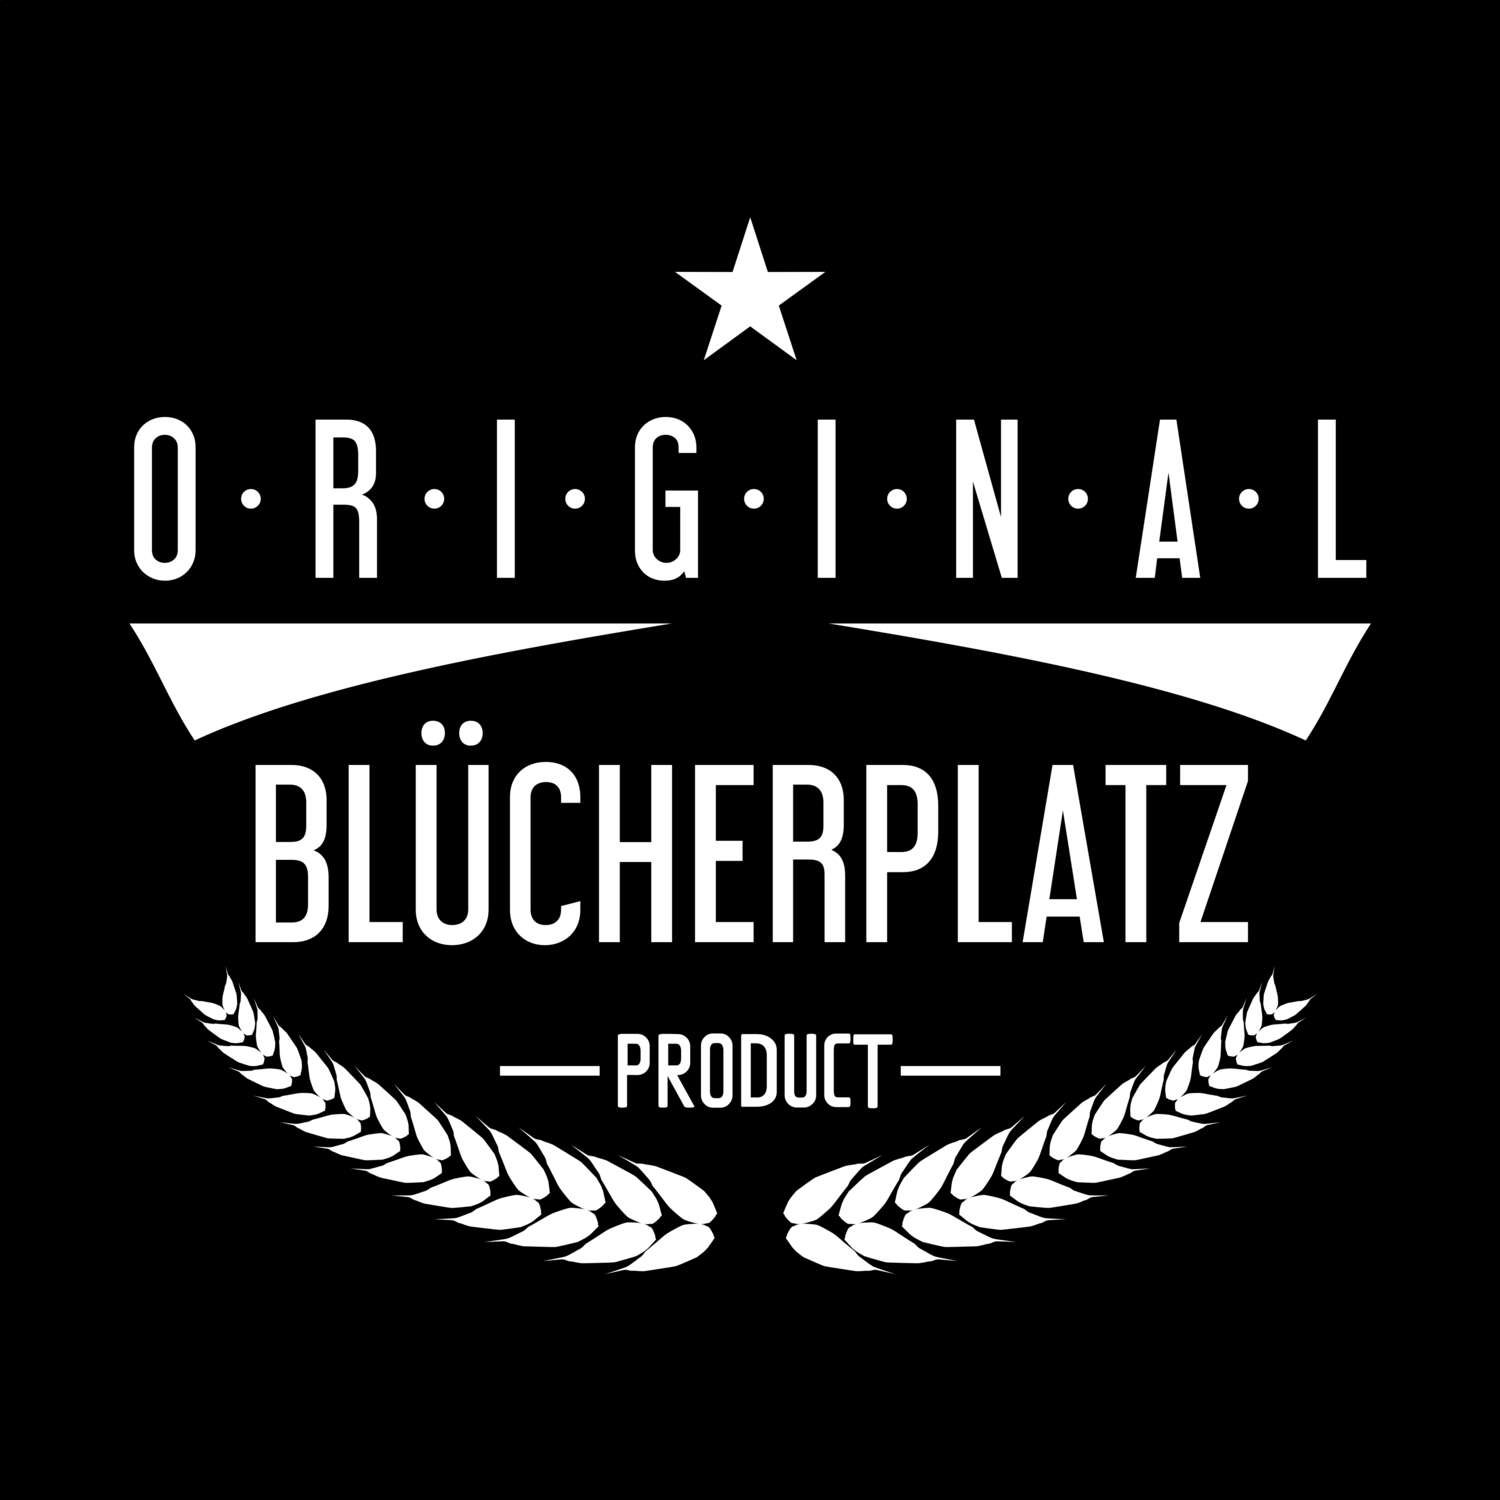 Blücherplatz T-Shirt »Original Product«